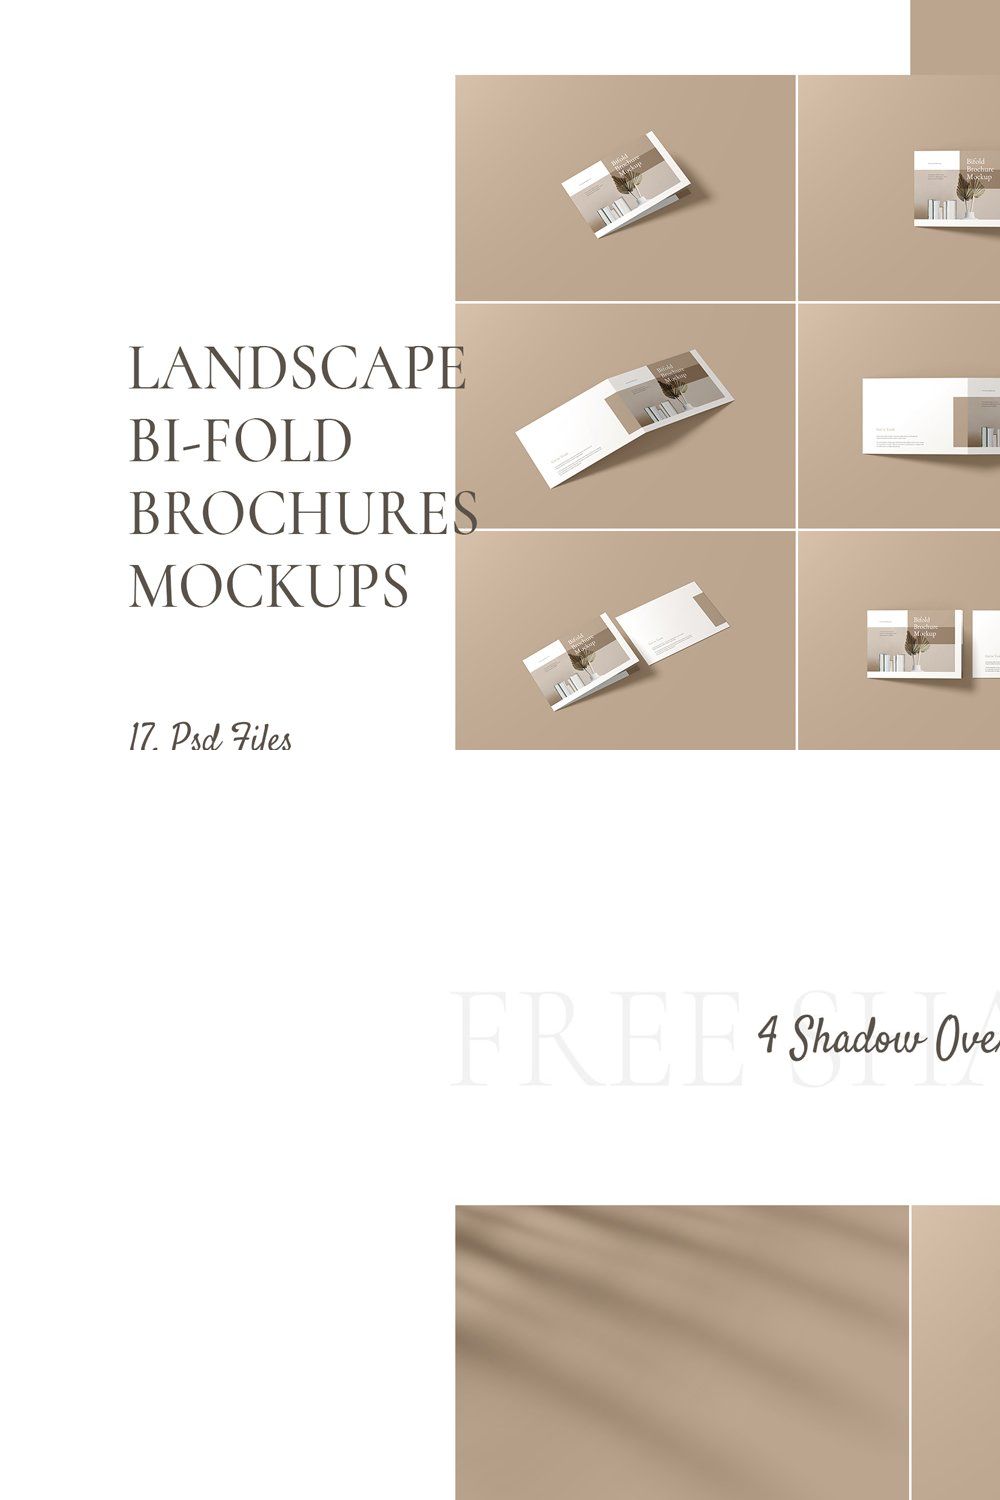 Landscape Bi-fold Brochure Mockup pinterest preview image.